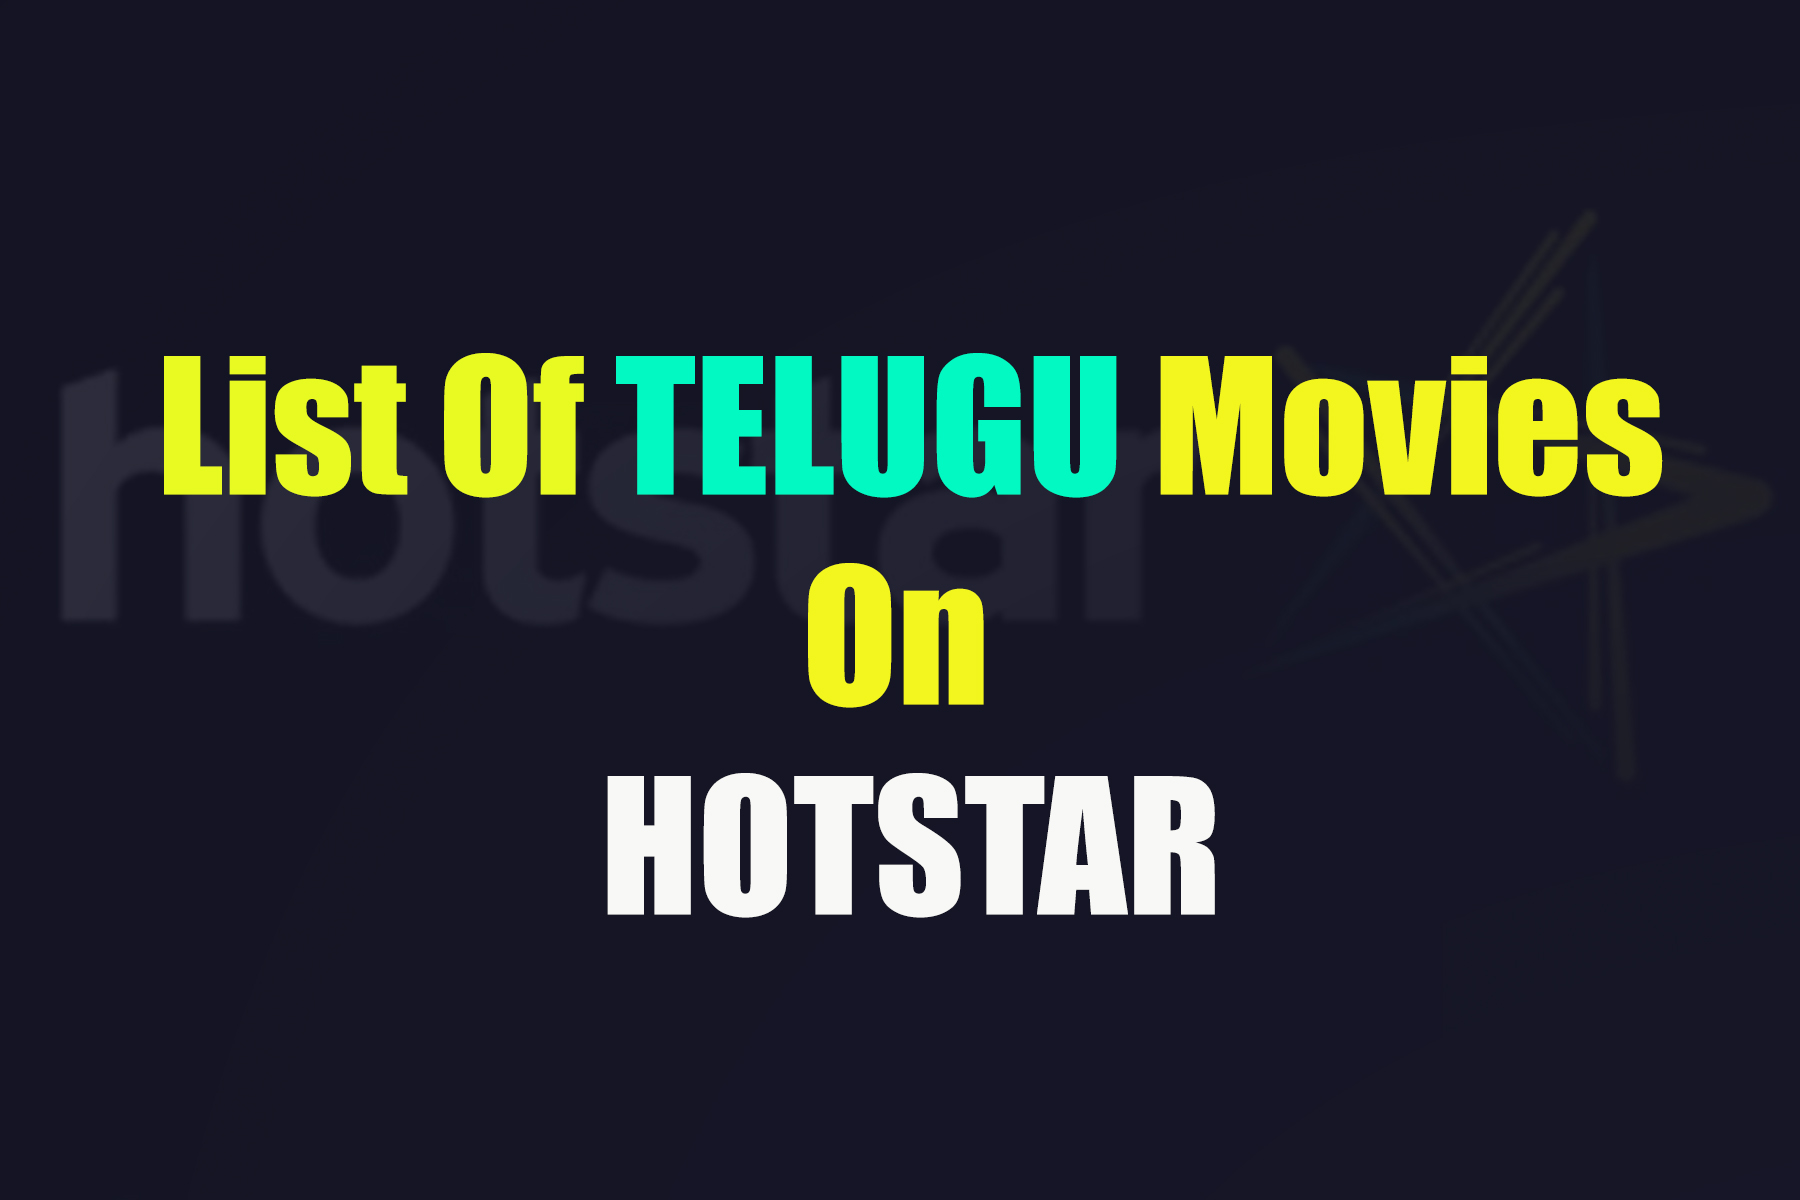 List Of Telugu Movies On Hotstar Telugu Movies on Hotstar